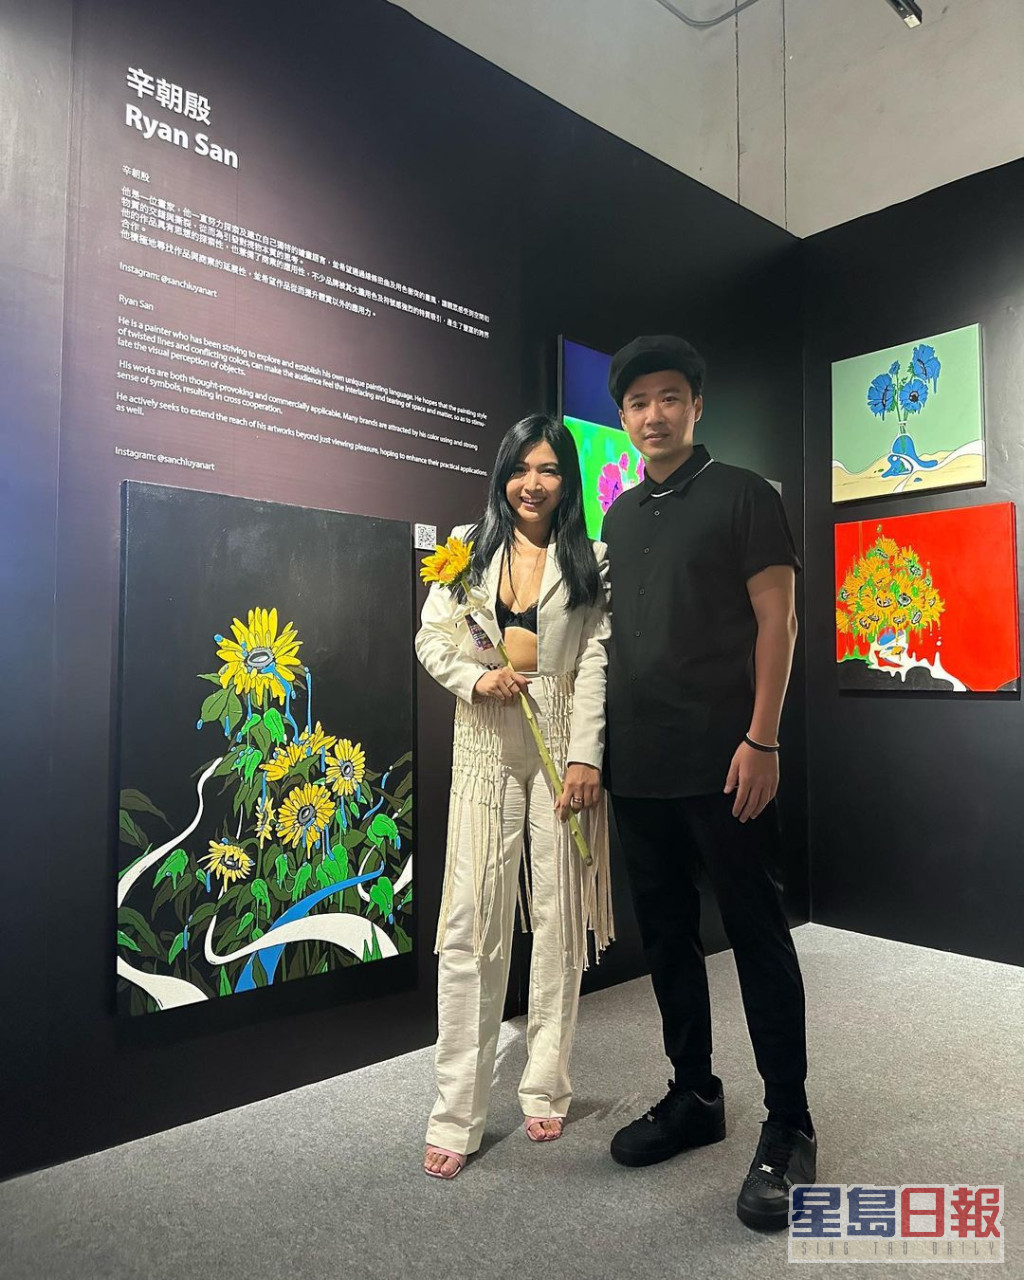 陈思圻前日贴出到澳门睇艺术展的照片。